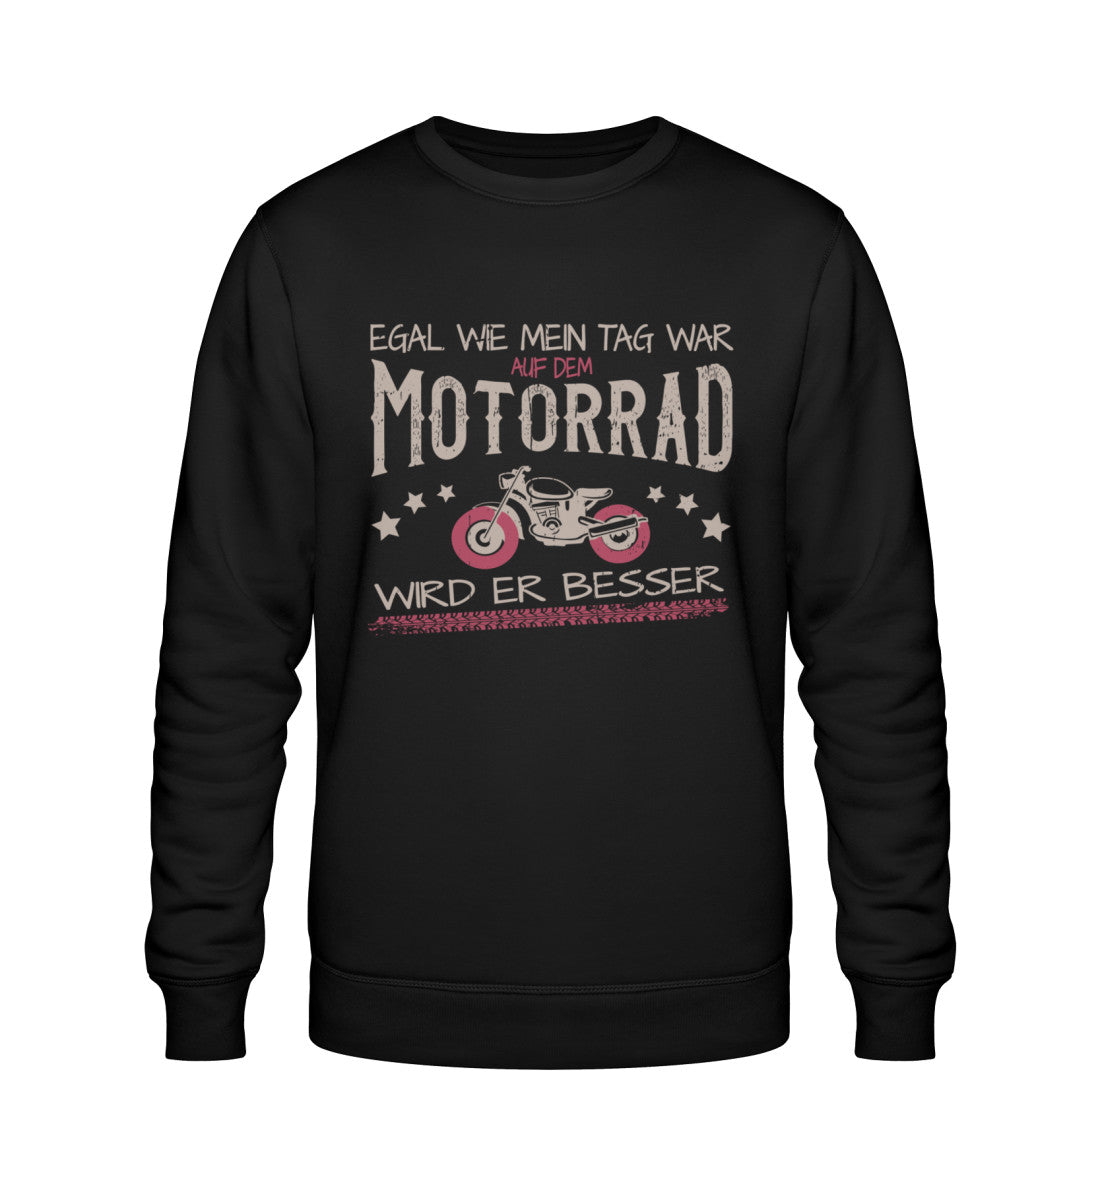 Ein Bikerin Sweatshirt für Motorradfahrerinnen von Wingbikers mit dem Aufdruck, Egal wie mein Tag war, auf dem Motorrad wird er besser, in schwarz. 